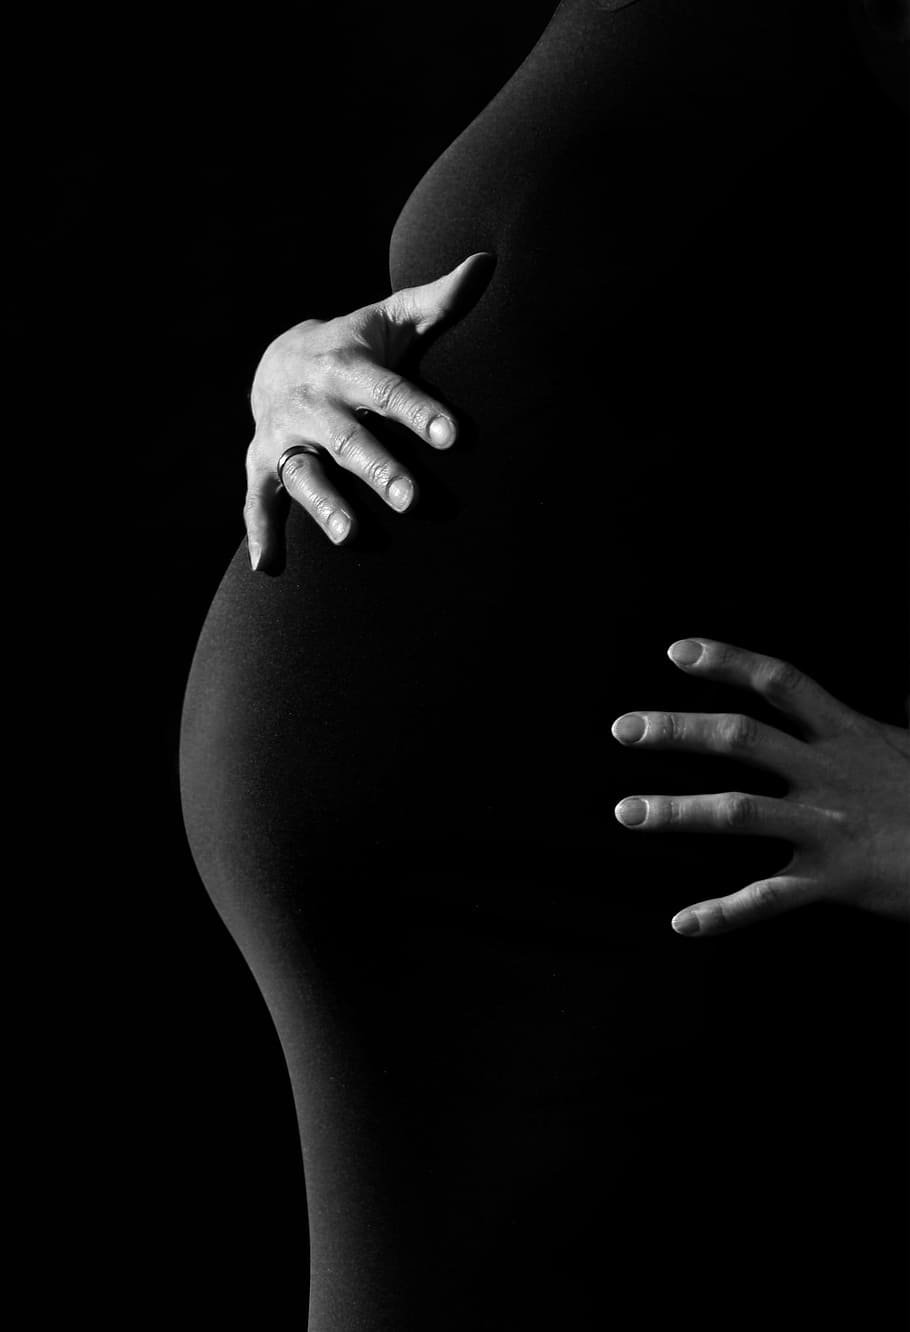 foto grayscale, orang, tangan, kehamilan, wanita, perut, kunci, sentuhan, anak, ibu